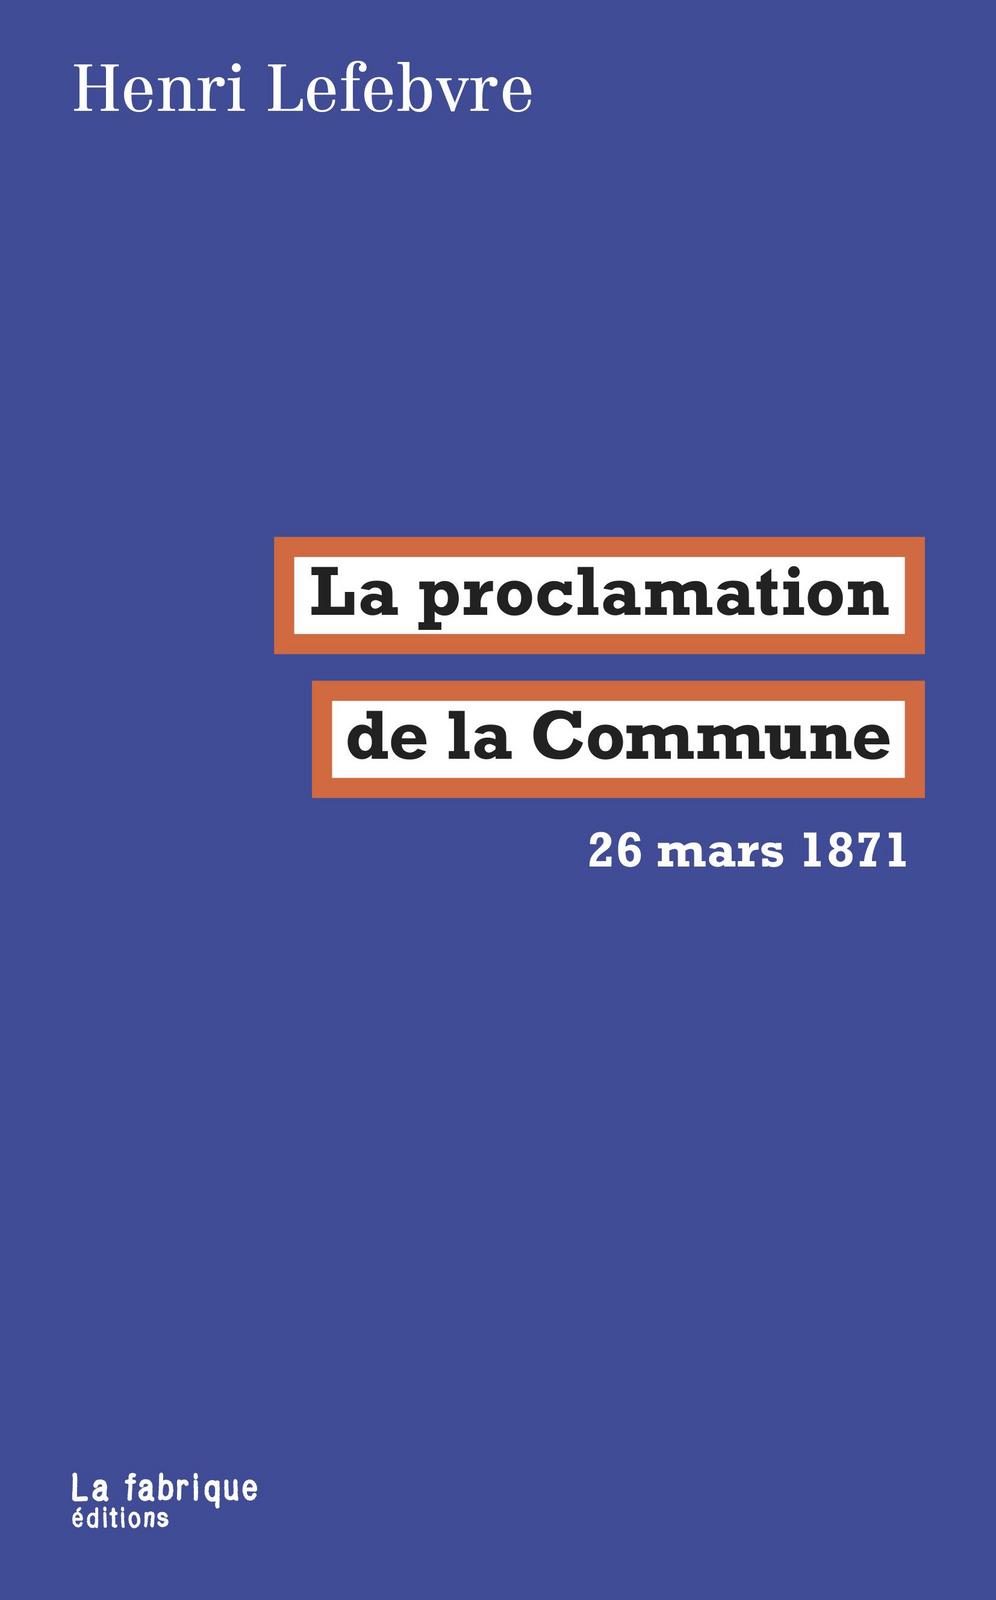 Henri Lefebvre: La proclamation de la Commune (French language, 2018, La Fabrique)